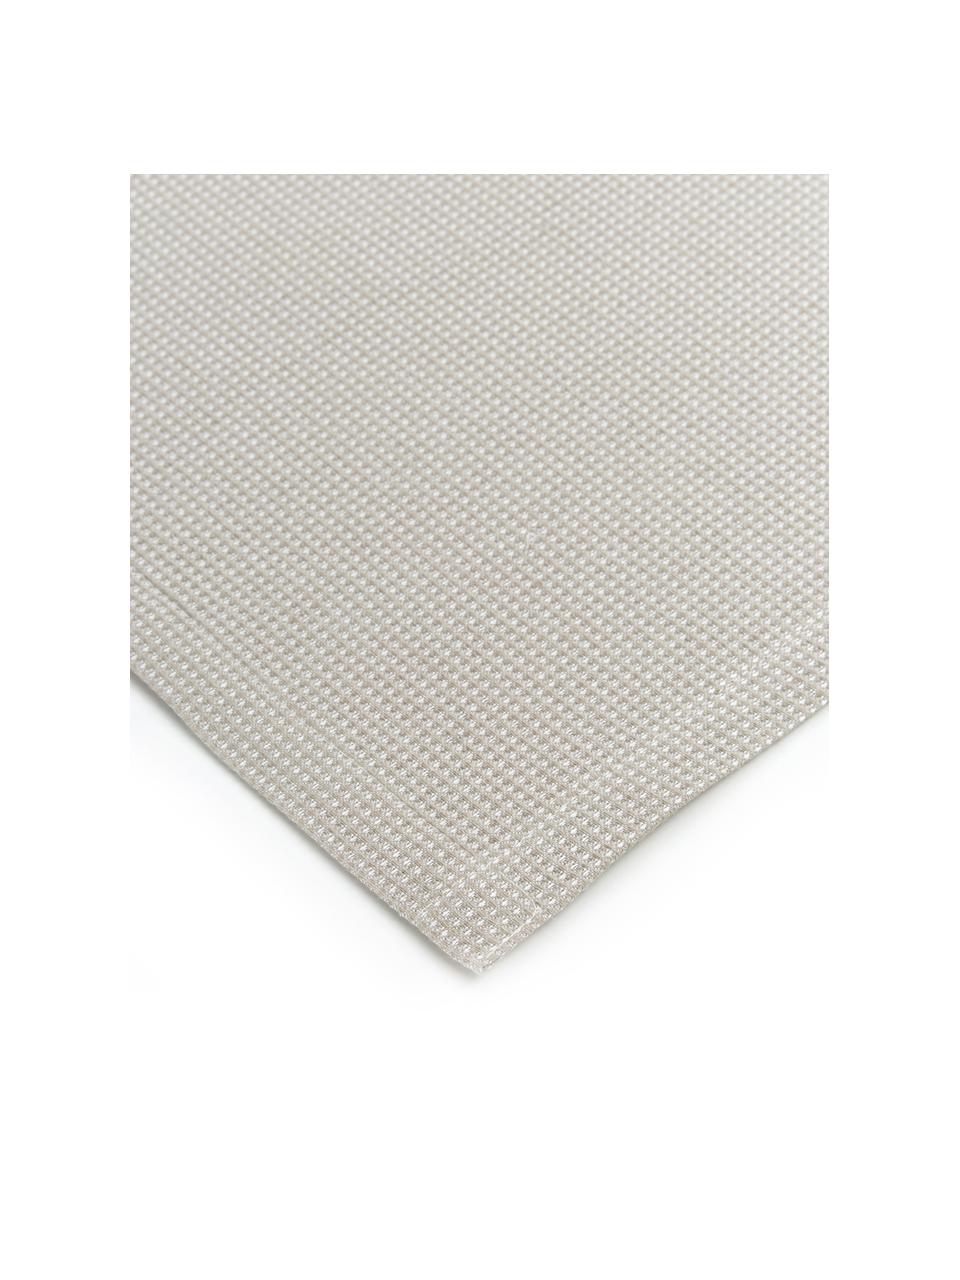 Waffelpiqué-Tischläufer Kubo in Taupe, 65% Baumwolle, 35% Polyester, Taupe, 40 x 145 cm